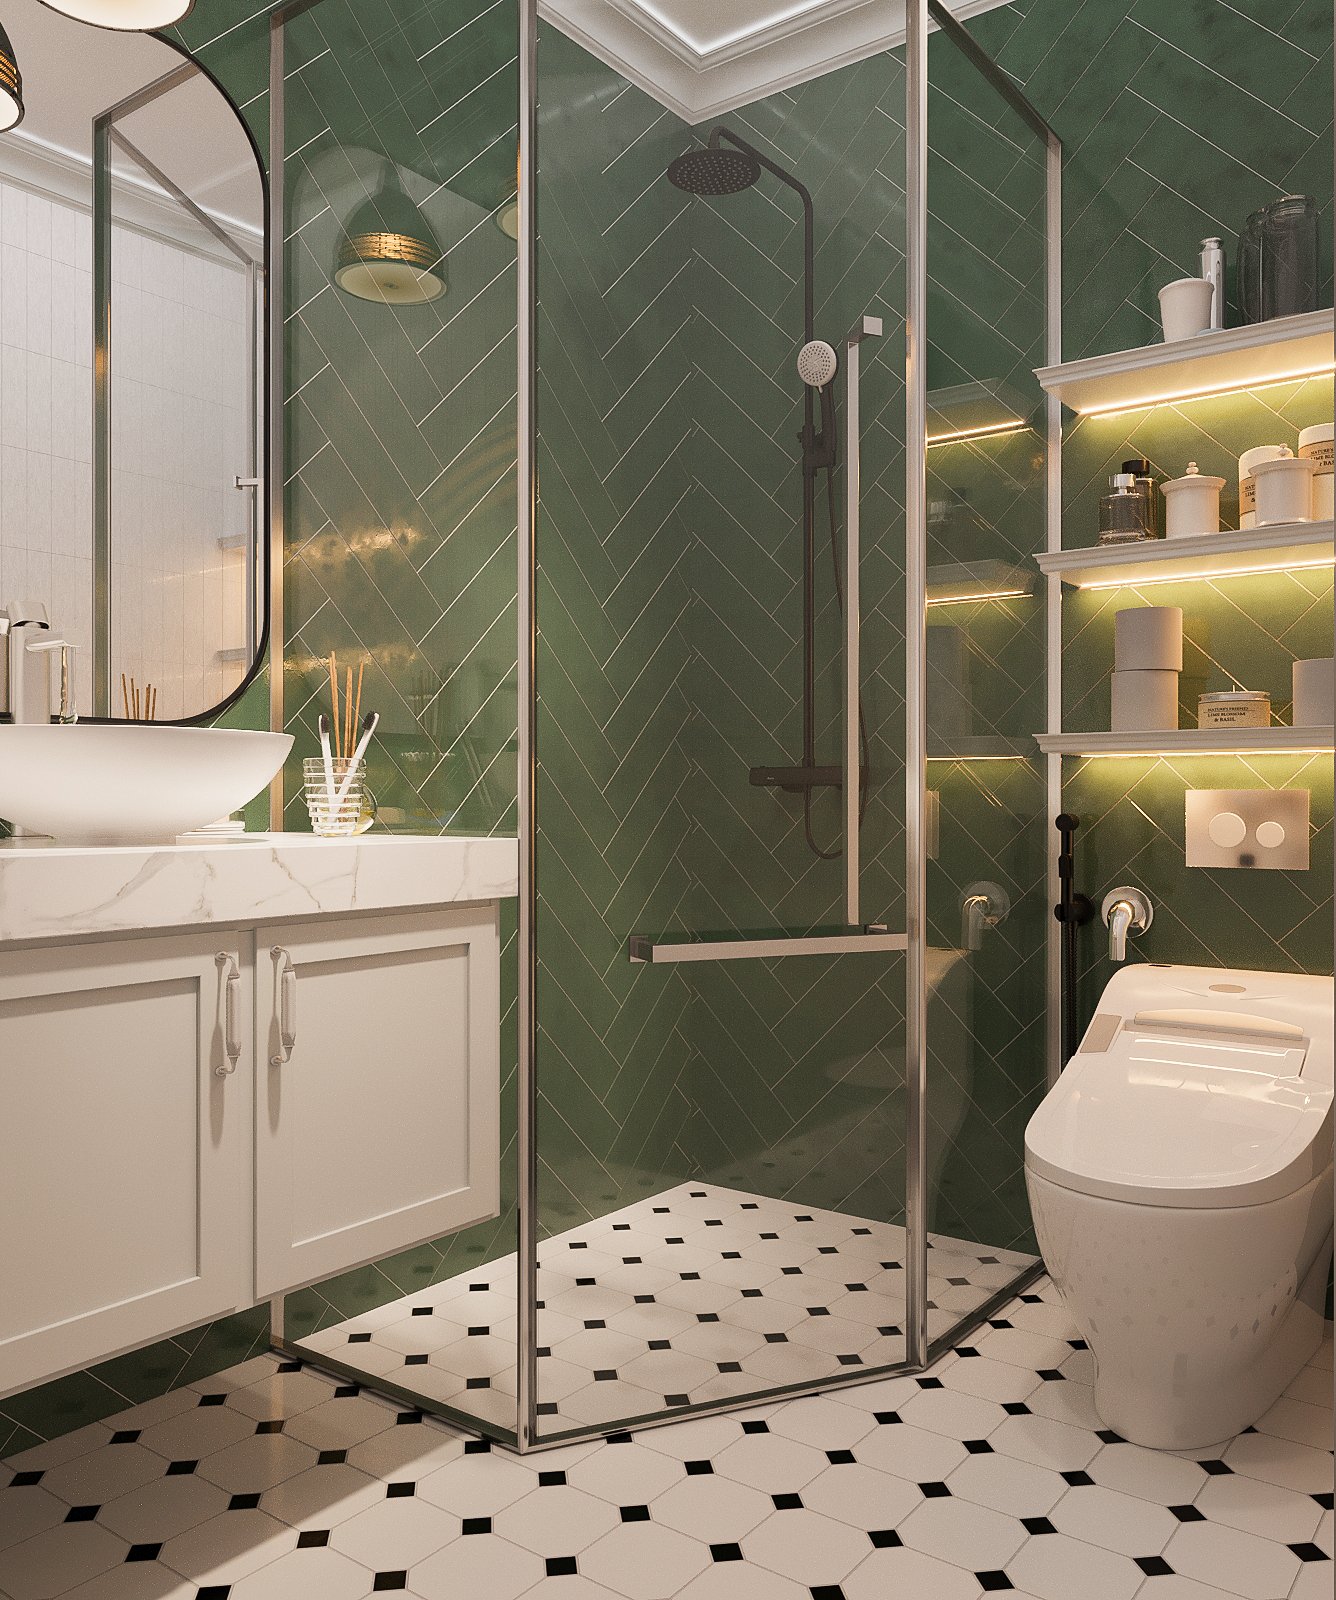 Buồng tắm vách kính trong suốt giúp tách biệt rõ ràng hai khu khô - ướt, đảm bảo cho căn phòng luôn khô ráo, sạch sẽ.